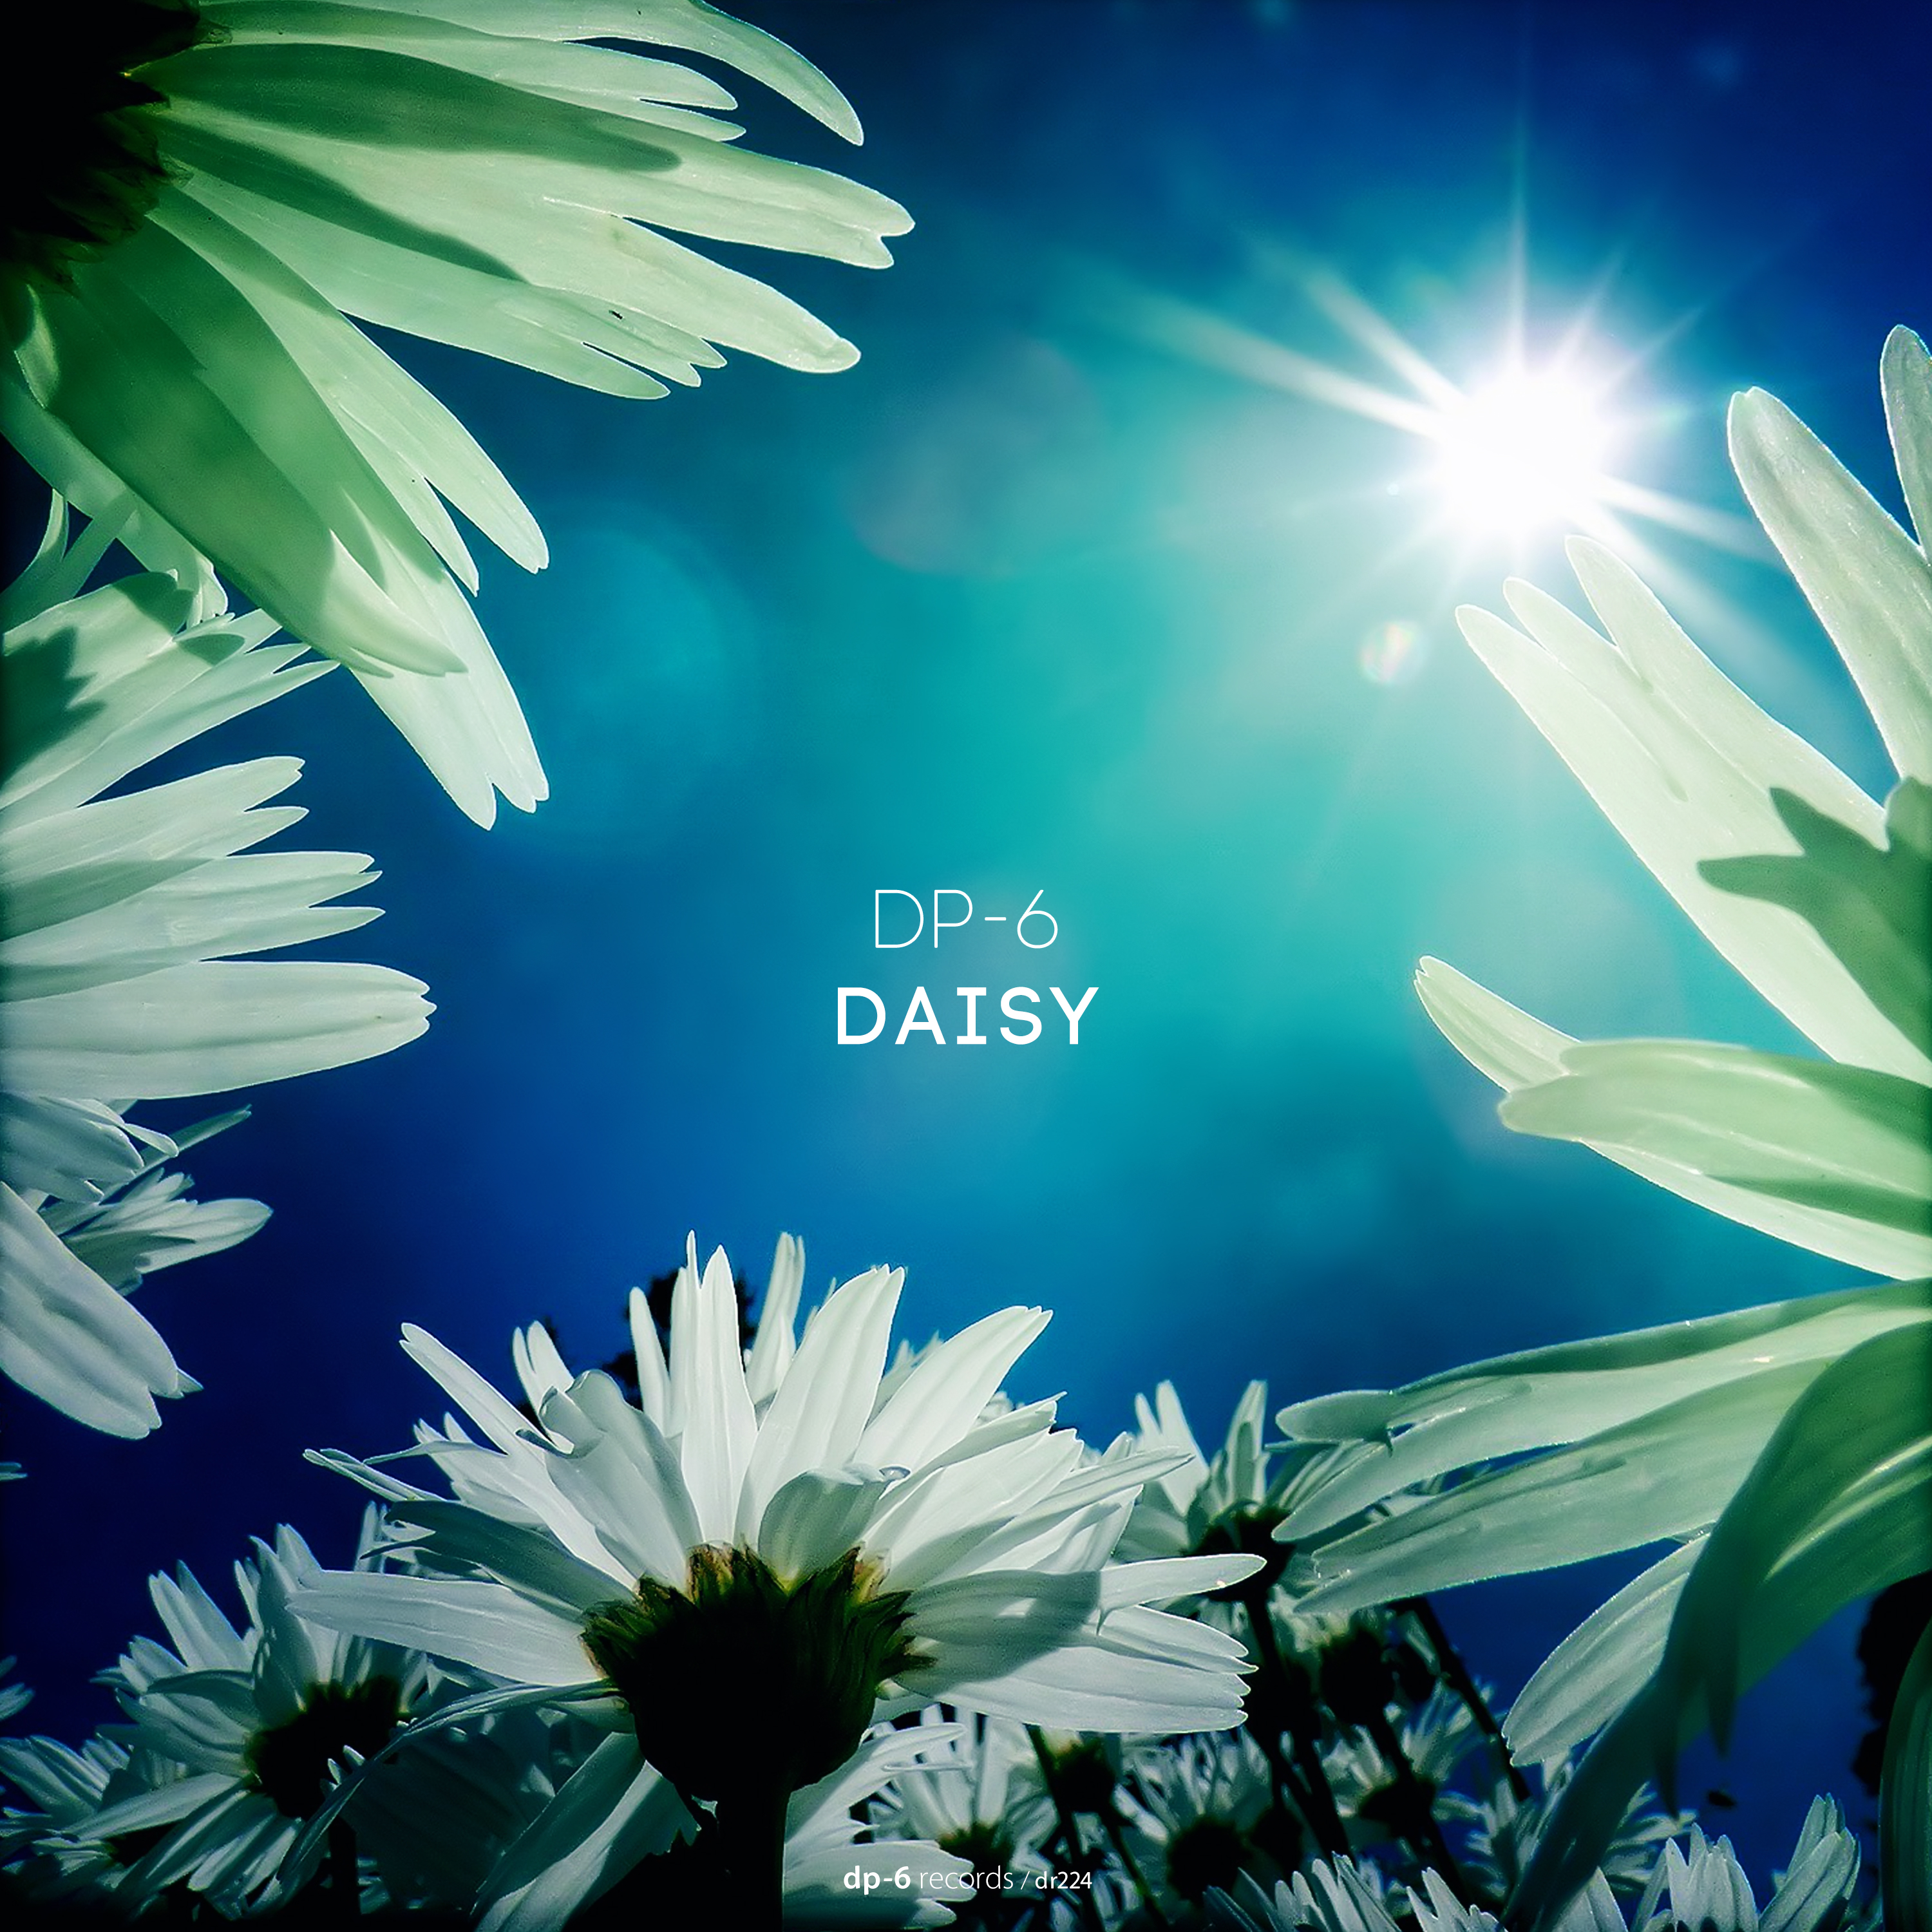 DP-6: Daisy